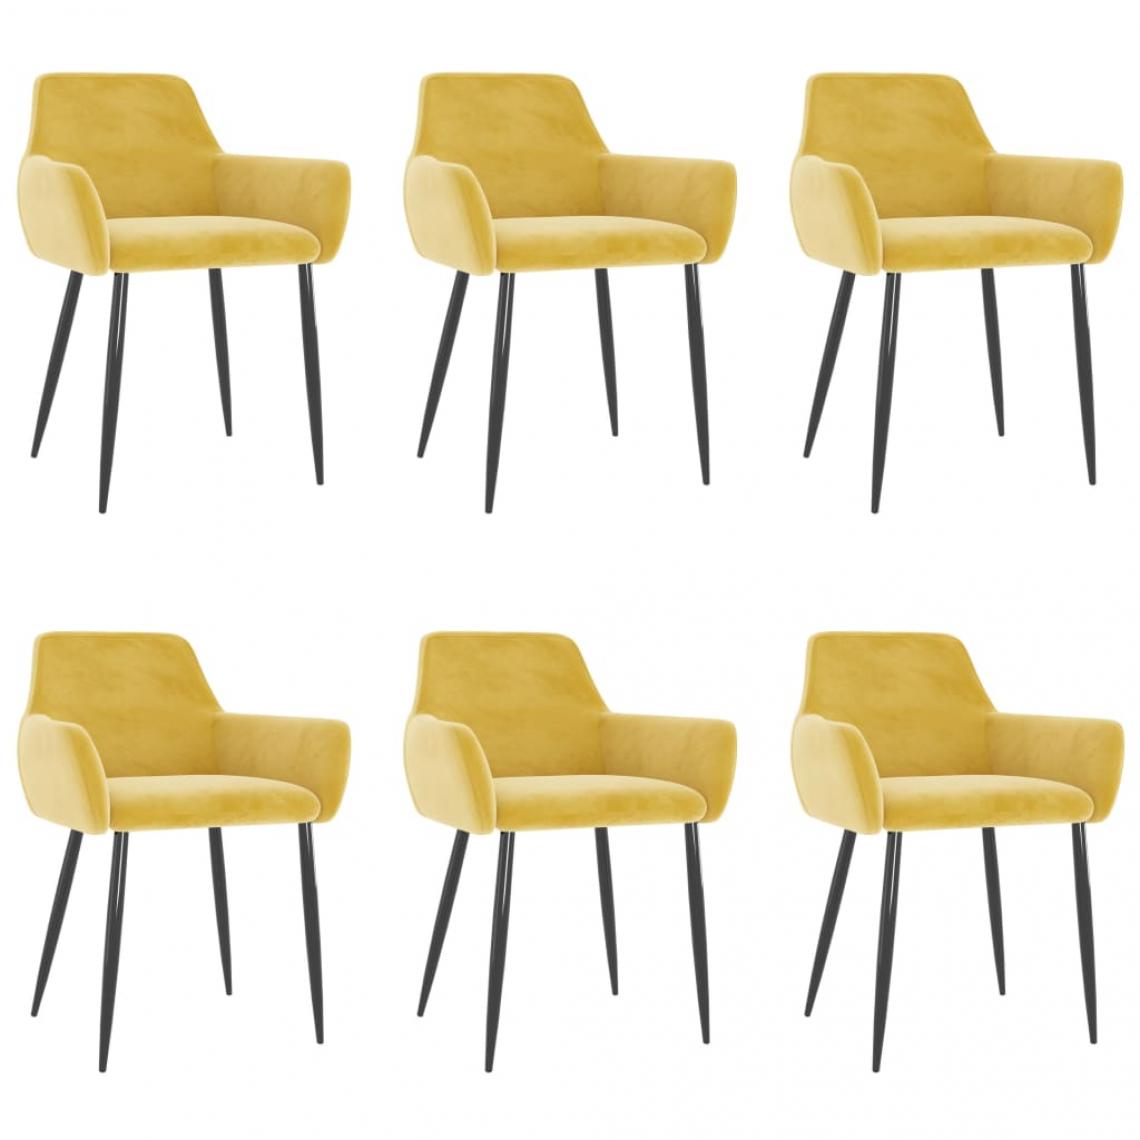 Decoshop26 - Lot de 6 chaises de salle à manger cuisine design moderne velours jaune moutarde CDS022522 - Chaises